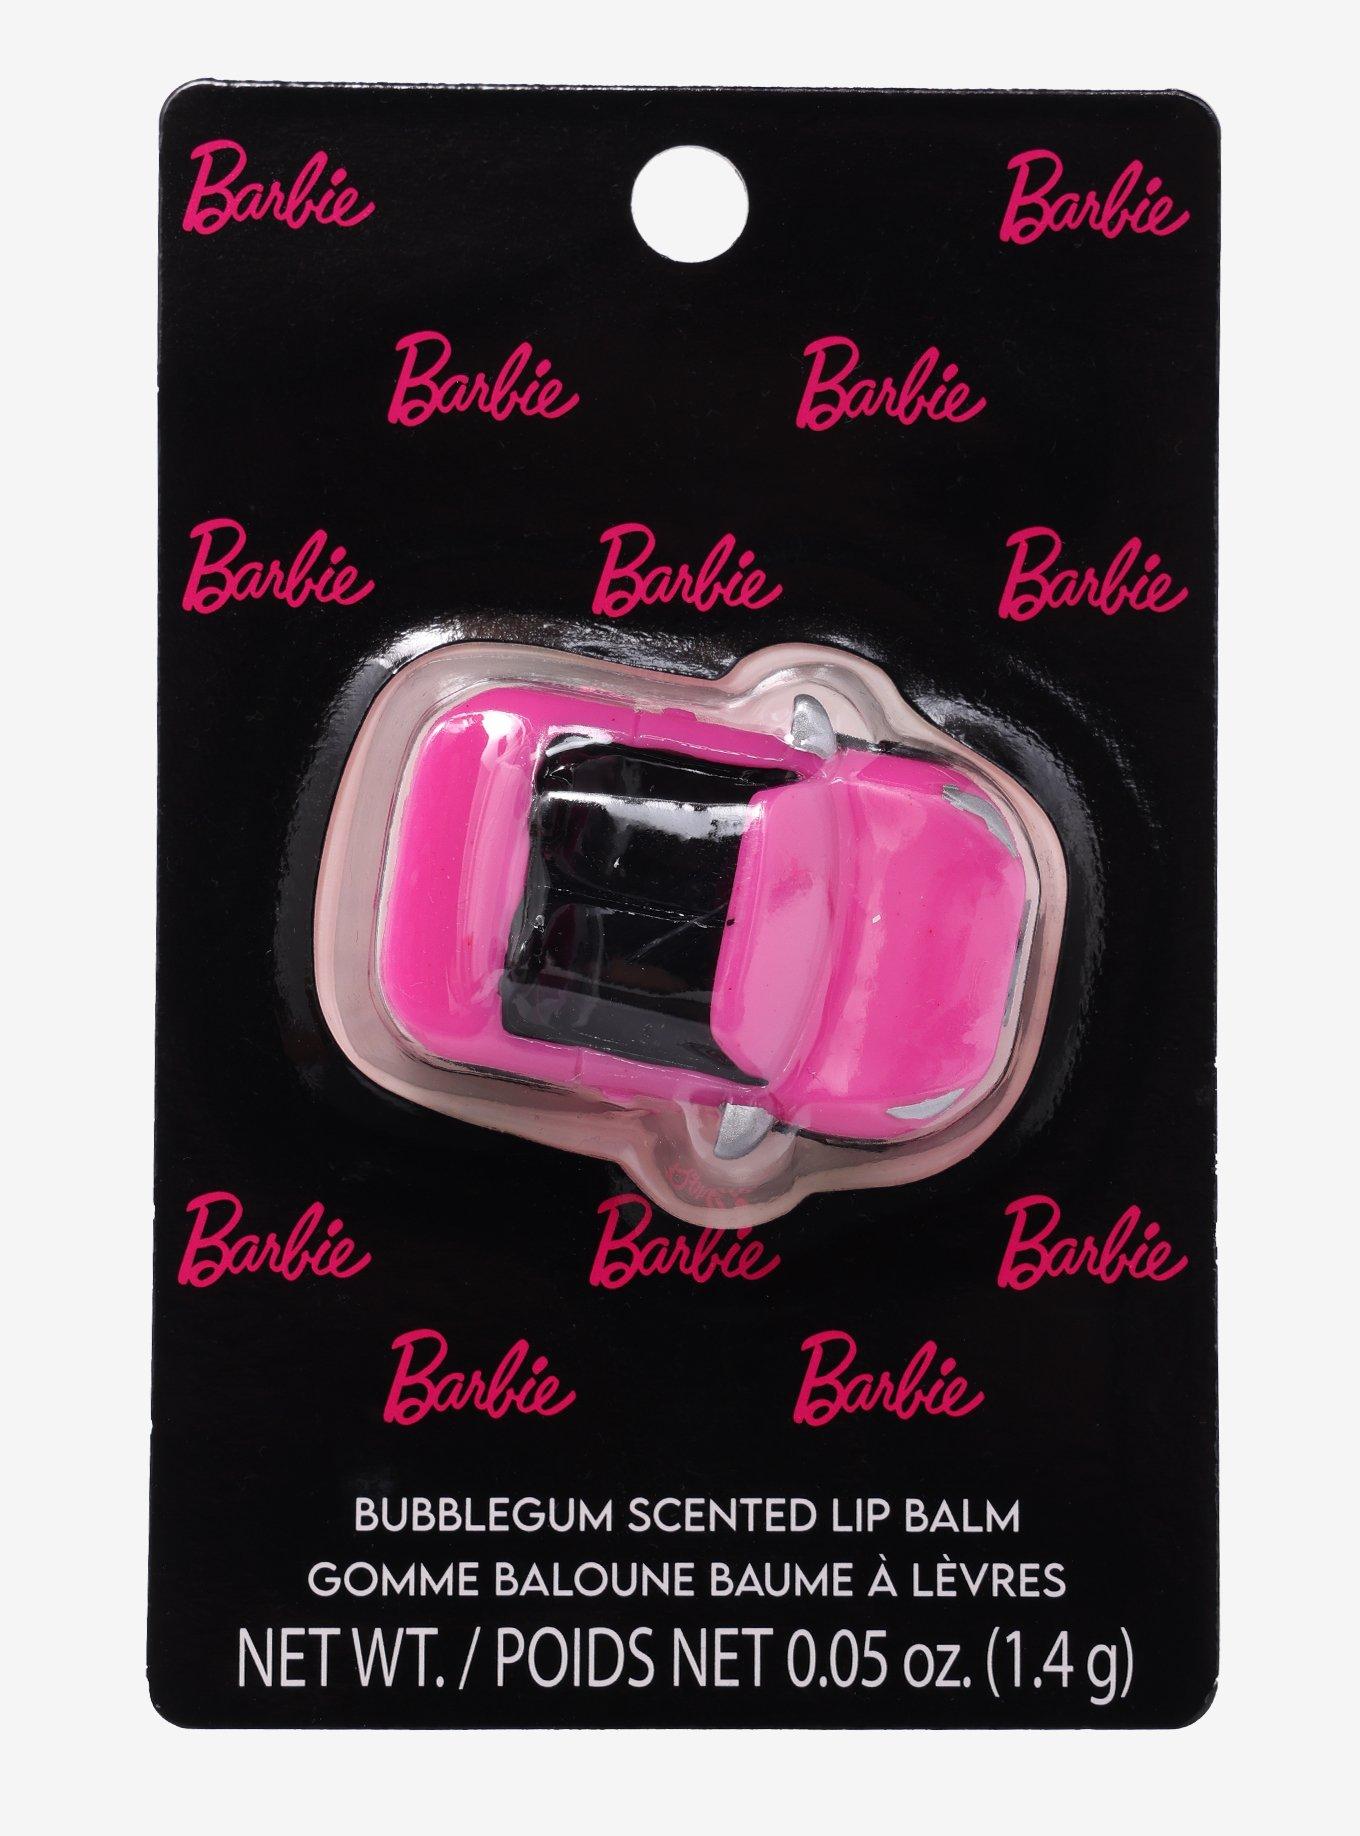 Bubblegum Lip Balm, Bubble Gum Chapstick for Kids